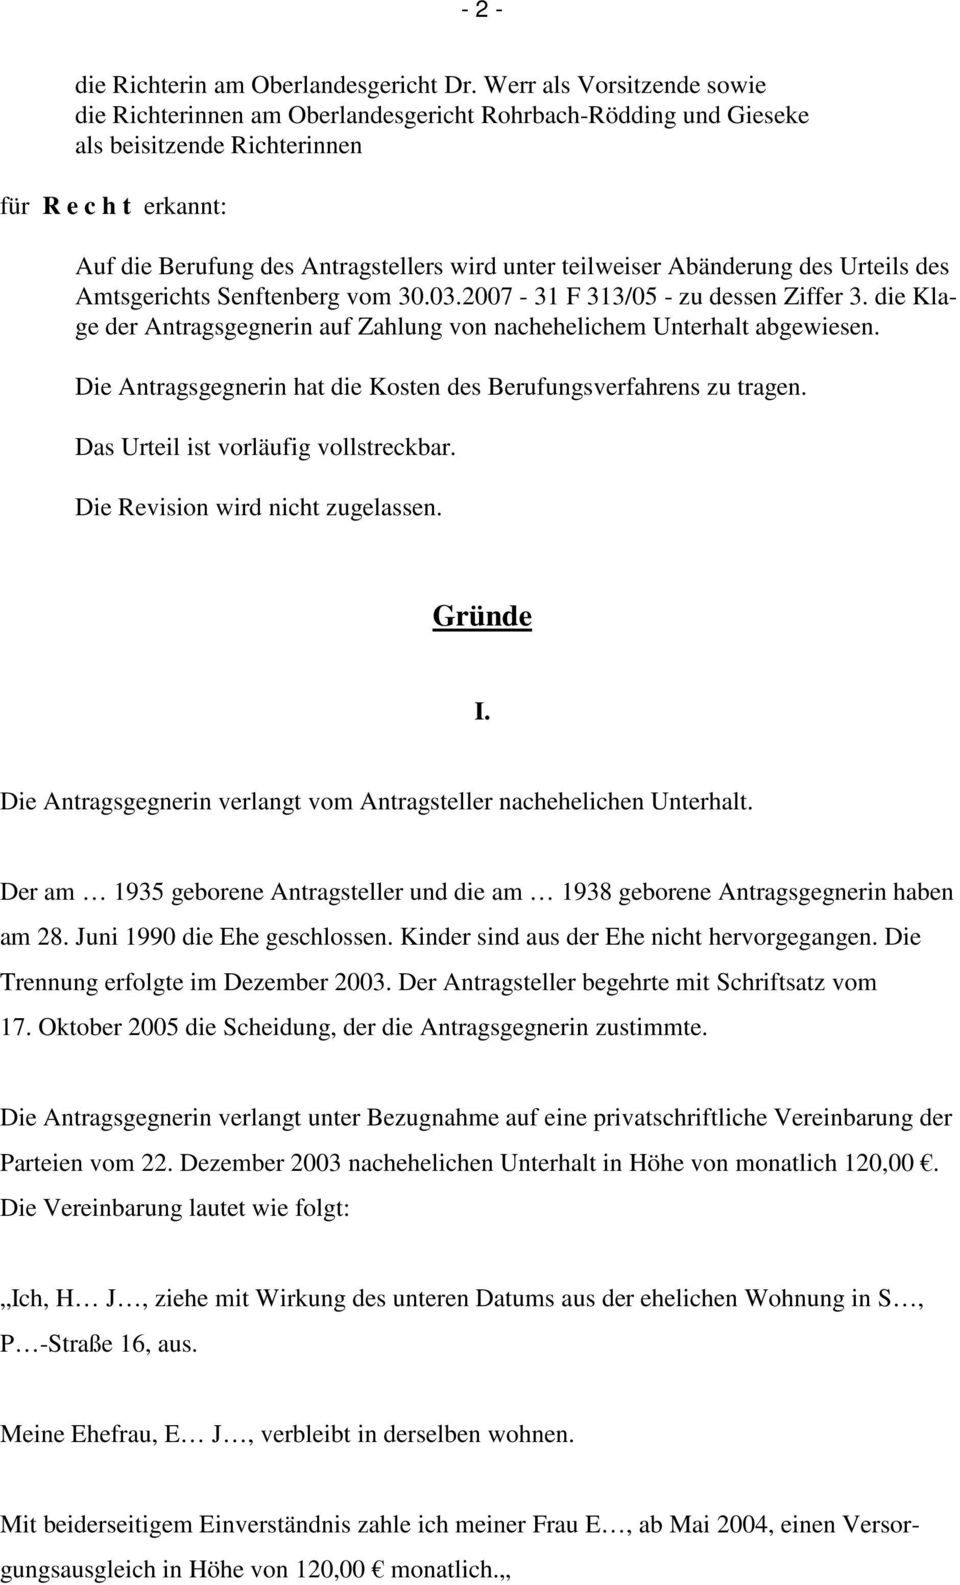 teilweiser Abänderung des Urteils des Amtsgerichts Senftenberg vom 30.03.2007-31 F 313/05 - zu dessen Ziffer 3. die Klage der Antragsgegnerin auf Zahlung von nachehelichem Unterhalt abgewiesen.